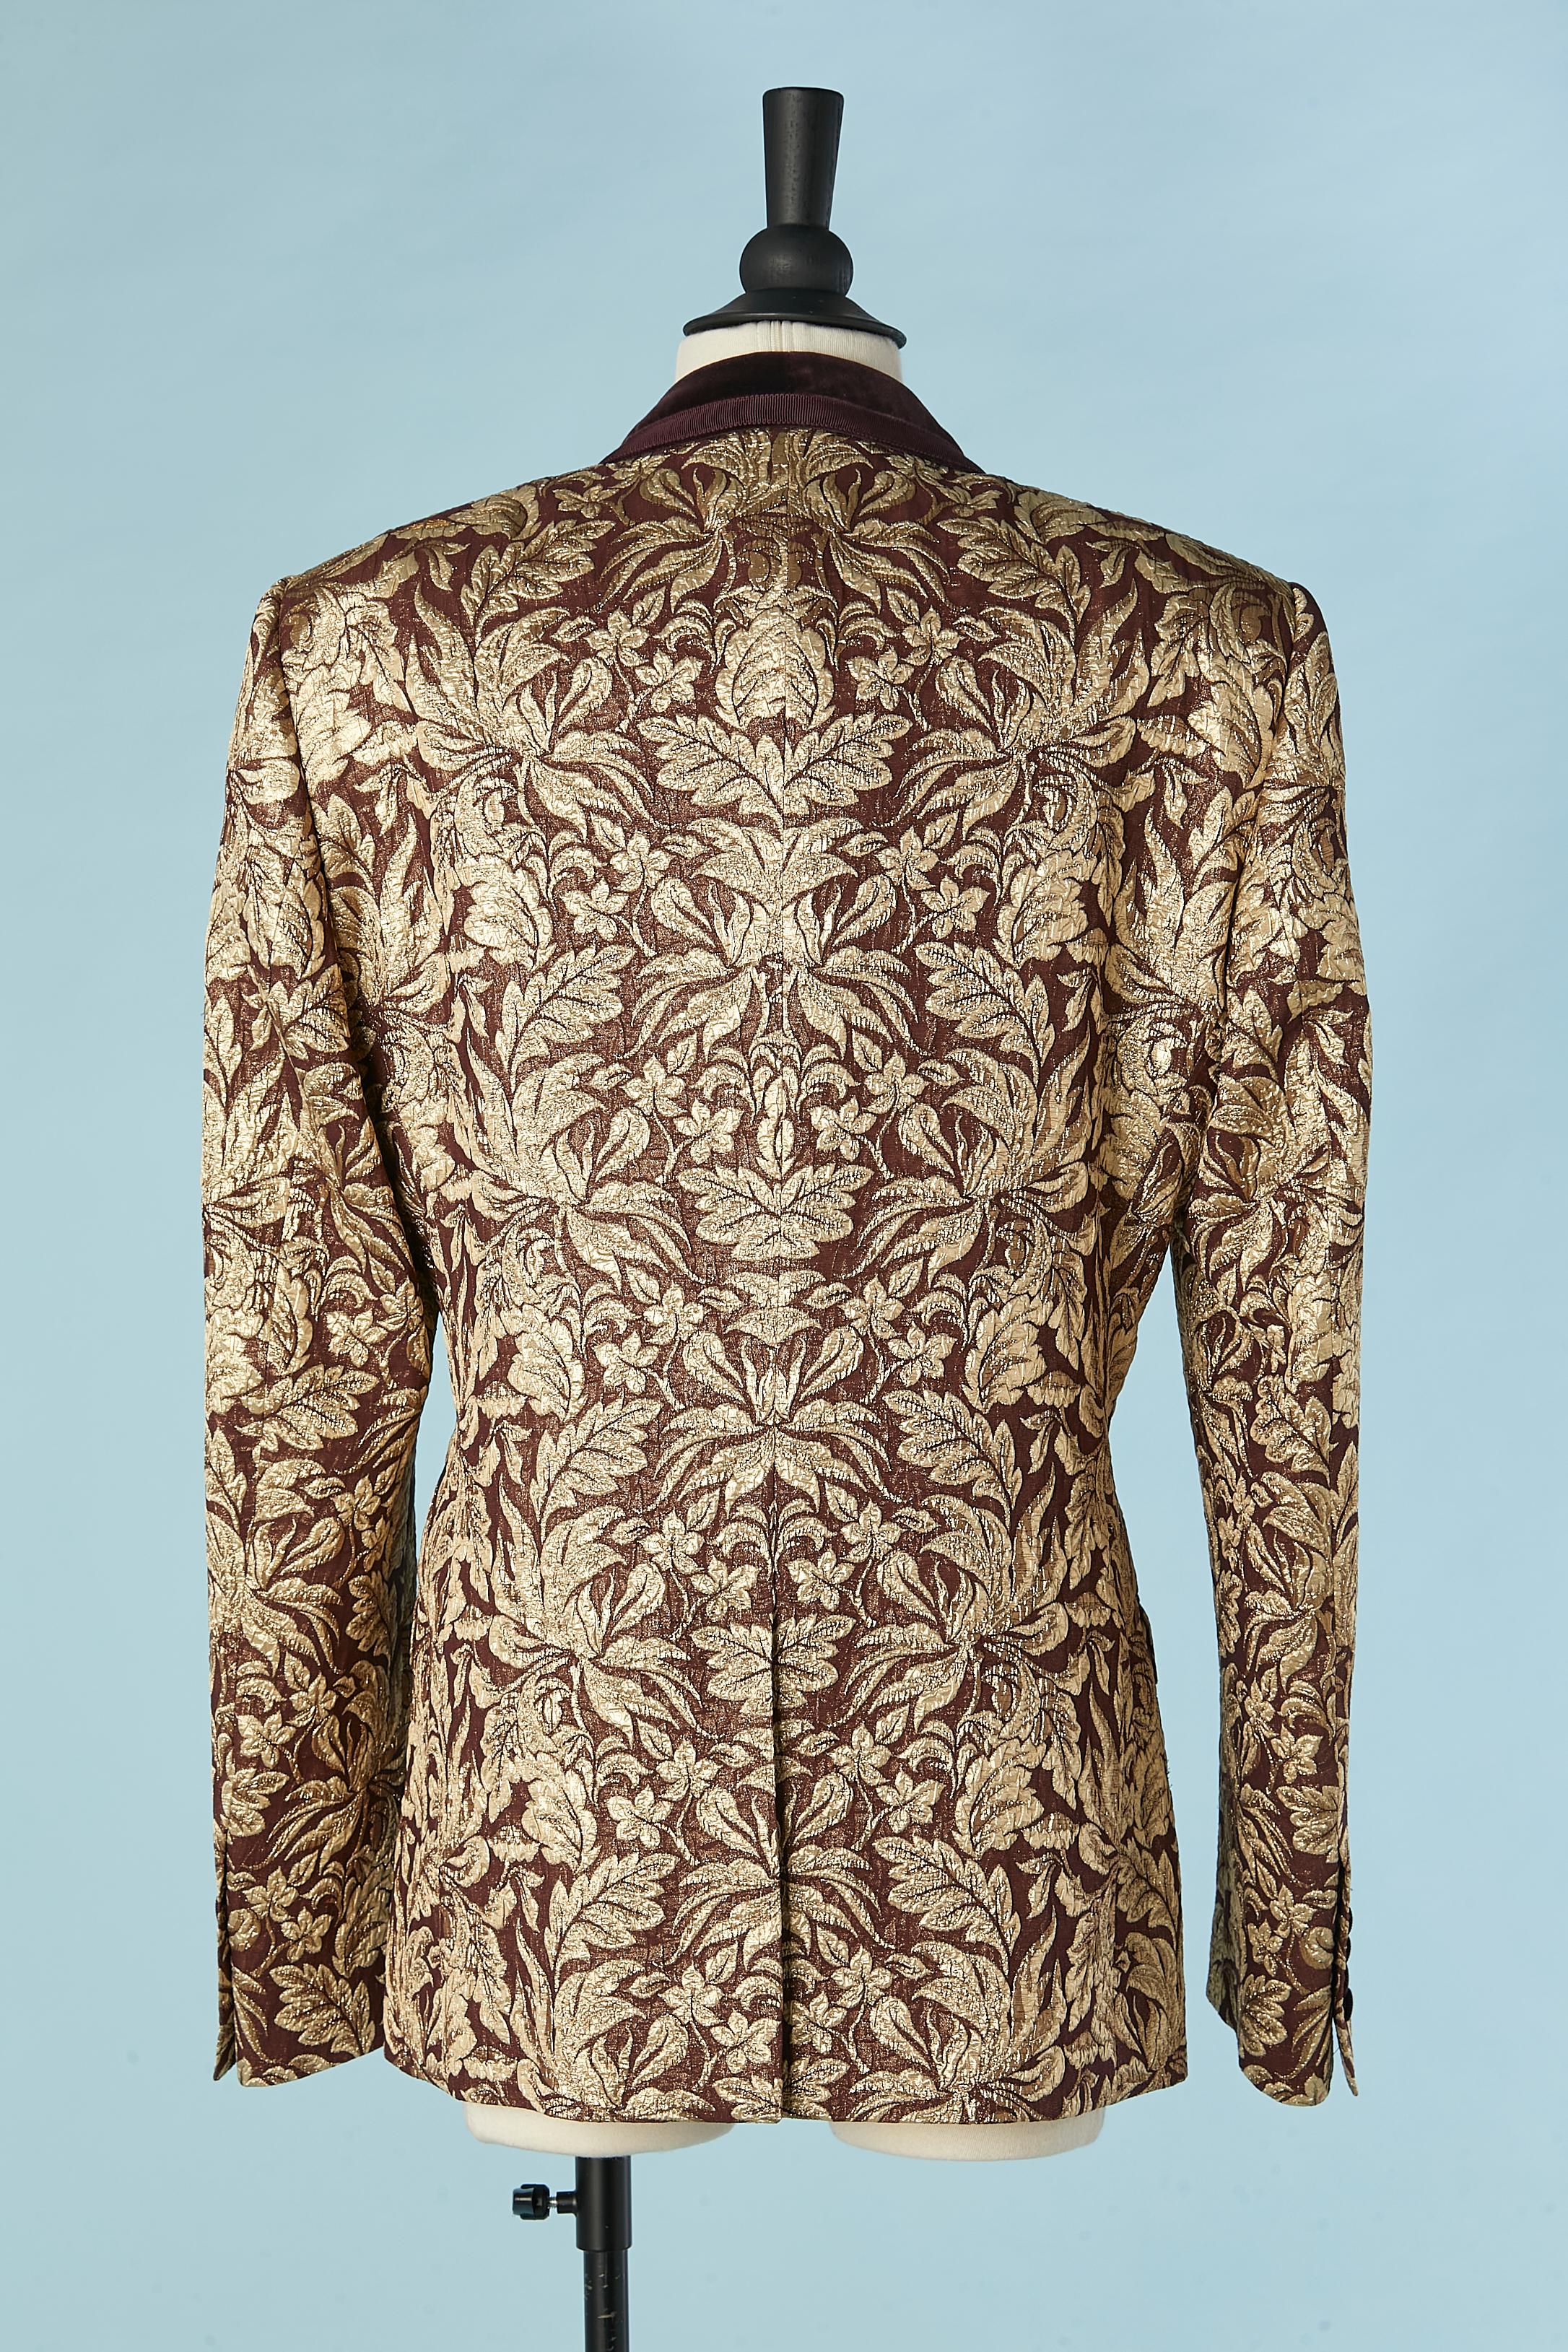 Tailored gold damask tuxedo jacket with burgundy velvet collar Dolce & Gabbana  For Sale 2